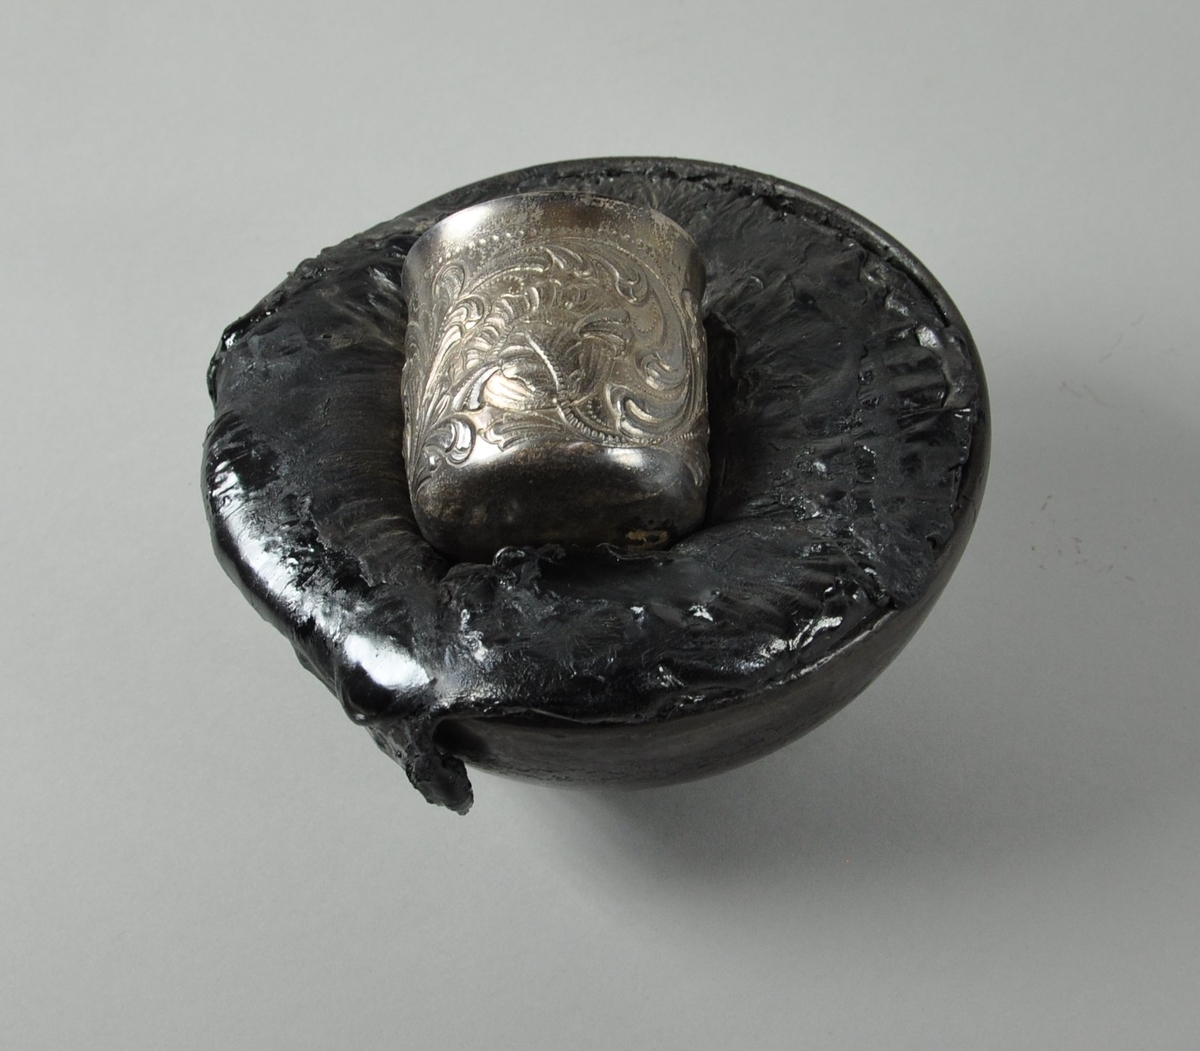 Rund bolle av metall med stivnet bek oppi. I beket ligger et krus av sølv med dekorativ siselering. Kulen står på et sammenfoldet belte av skinn.